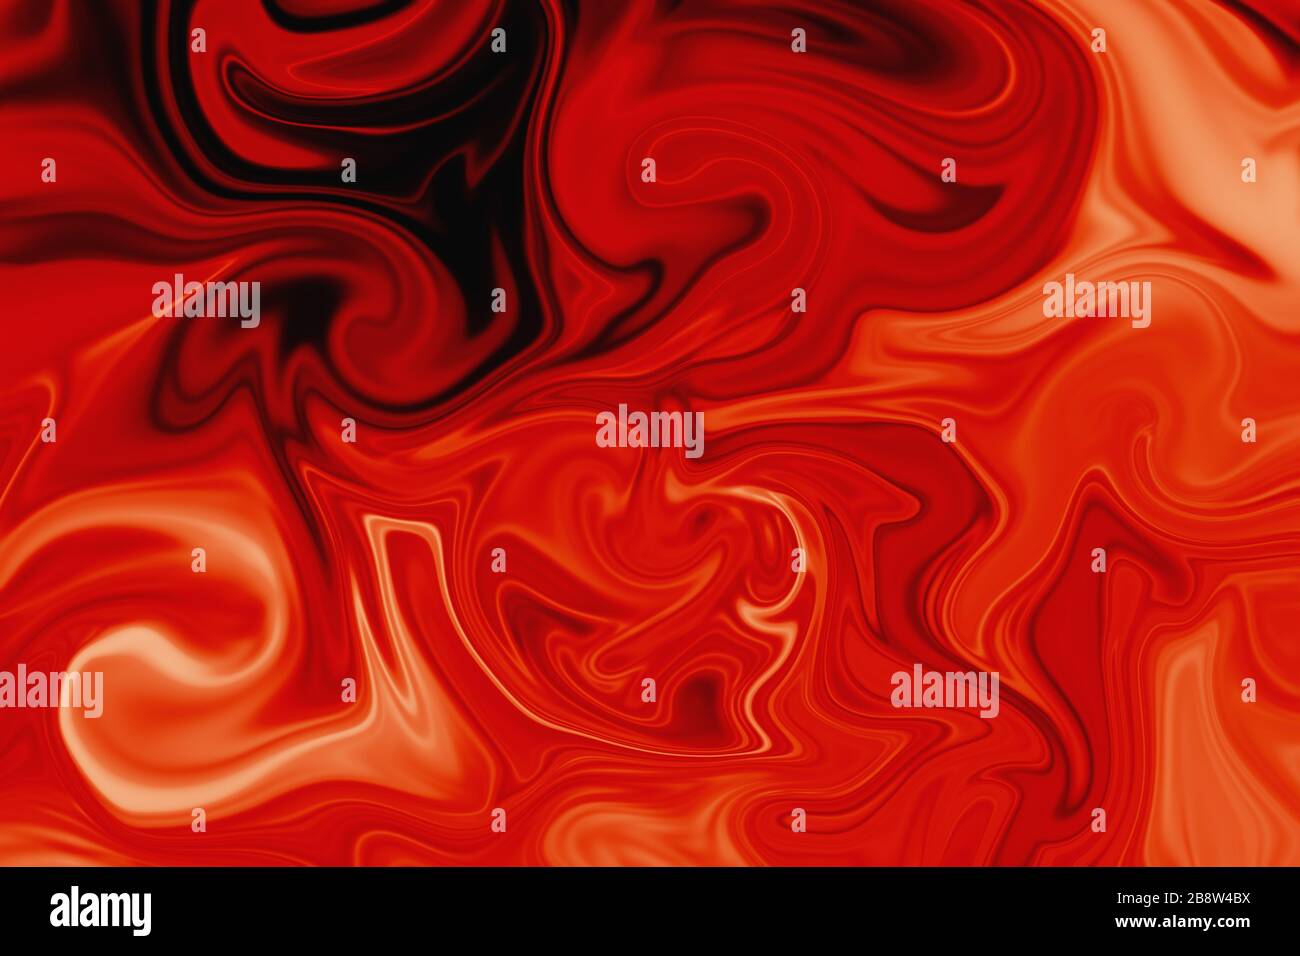 Abstrakter Hintergrund der roten Blutflüssigkeit. Rote Farbtextur und Hintergrundbild. Stockfoto